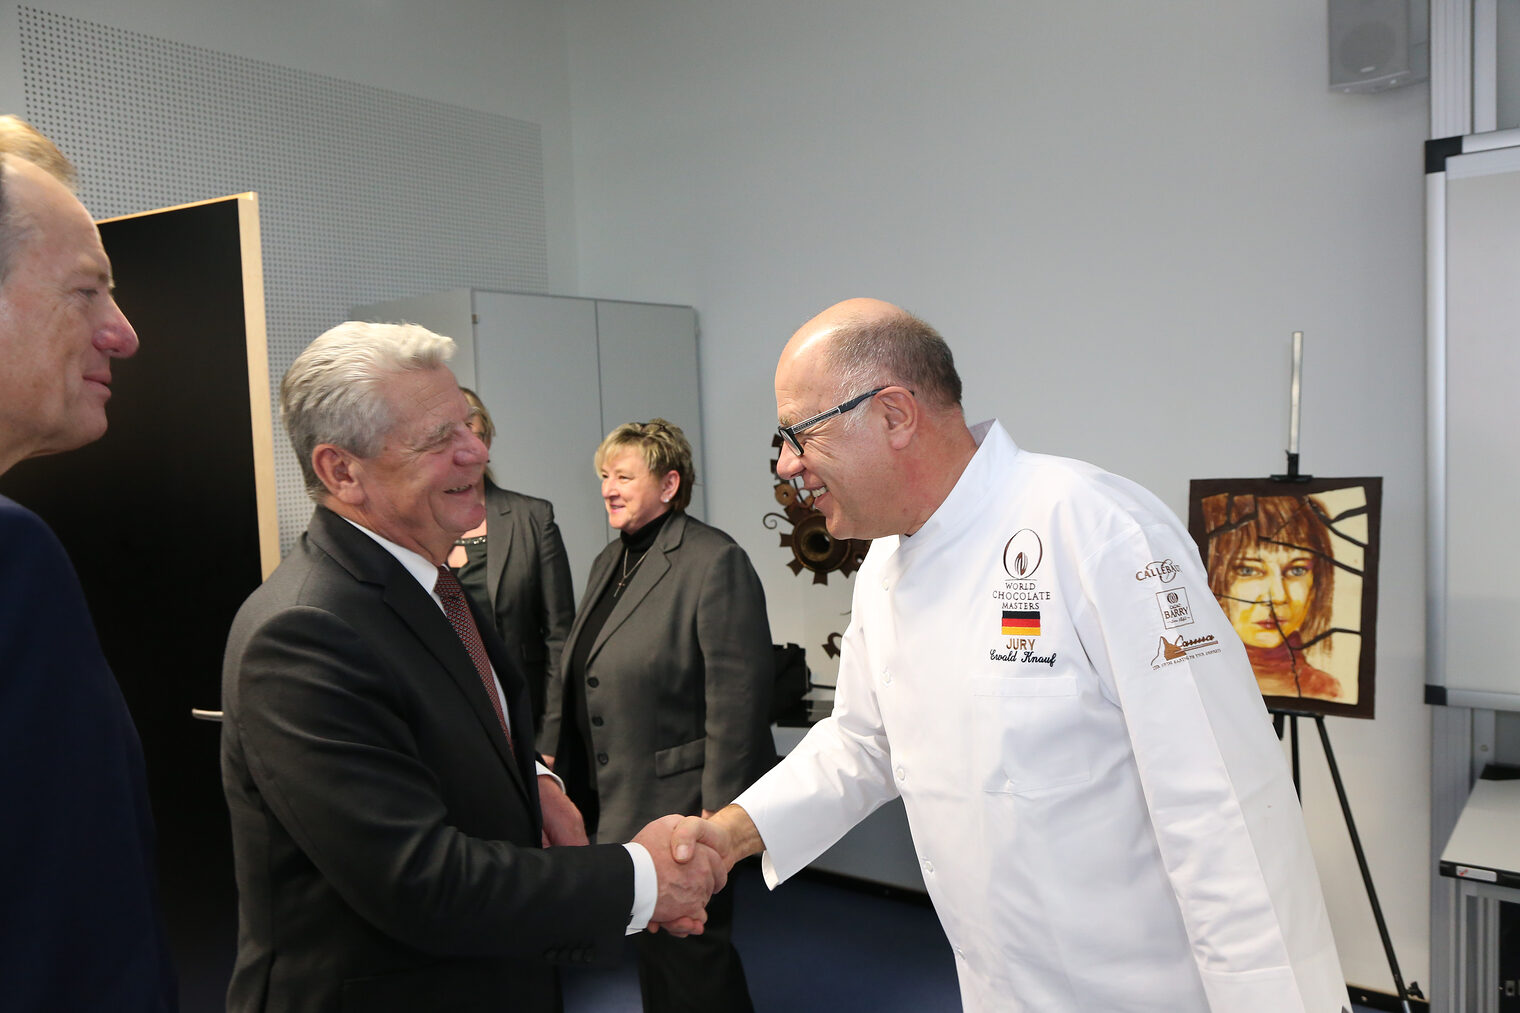 Bundespräsident Joachim Gauck besucht das Handwerk 82